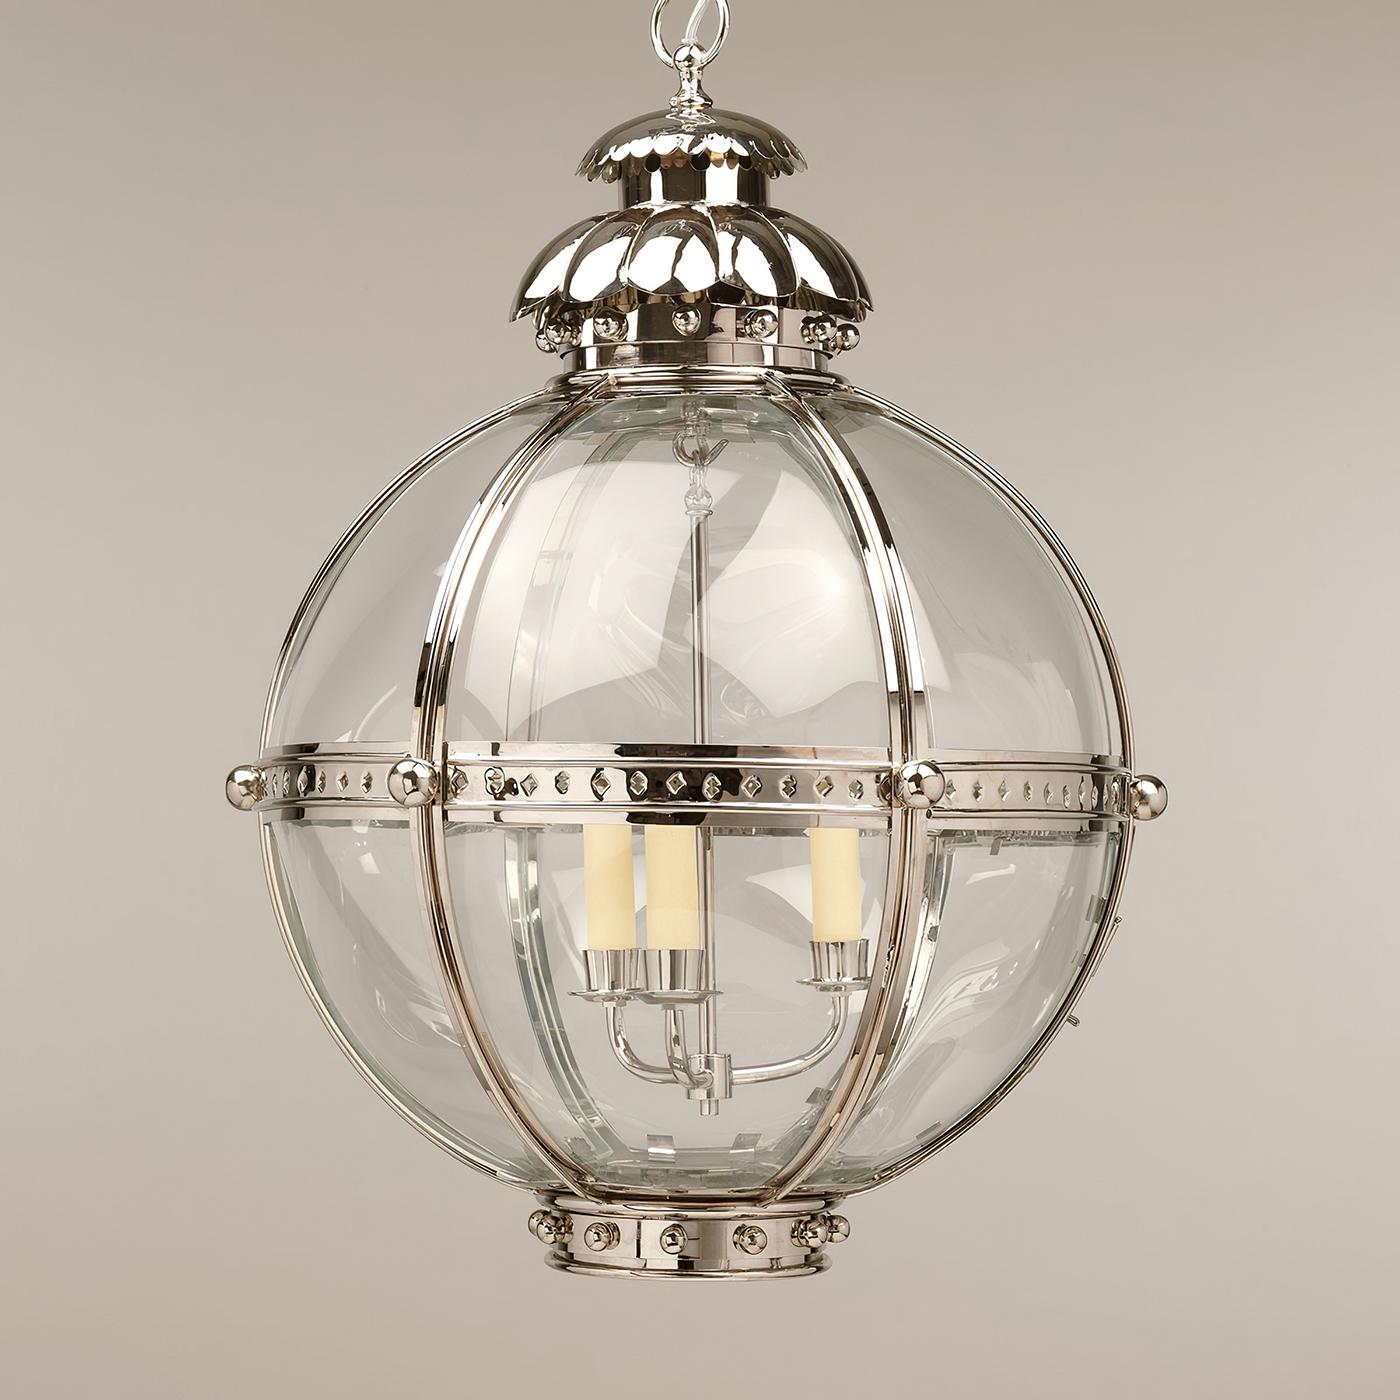 La lanterne Globe est inspirée d'une antiquité similaire du XIXe siècle. La forme de globe du luminaire dégage de la force et est unie par les fleurons en finition nickel et le sommet en forme d'acanthe.

La lanterne est fabriquée à la main à